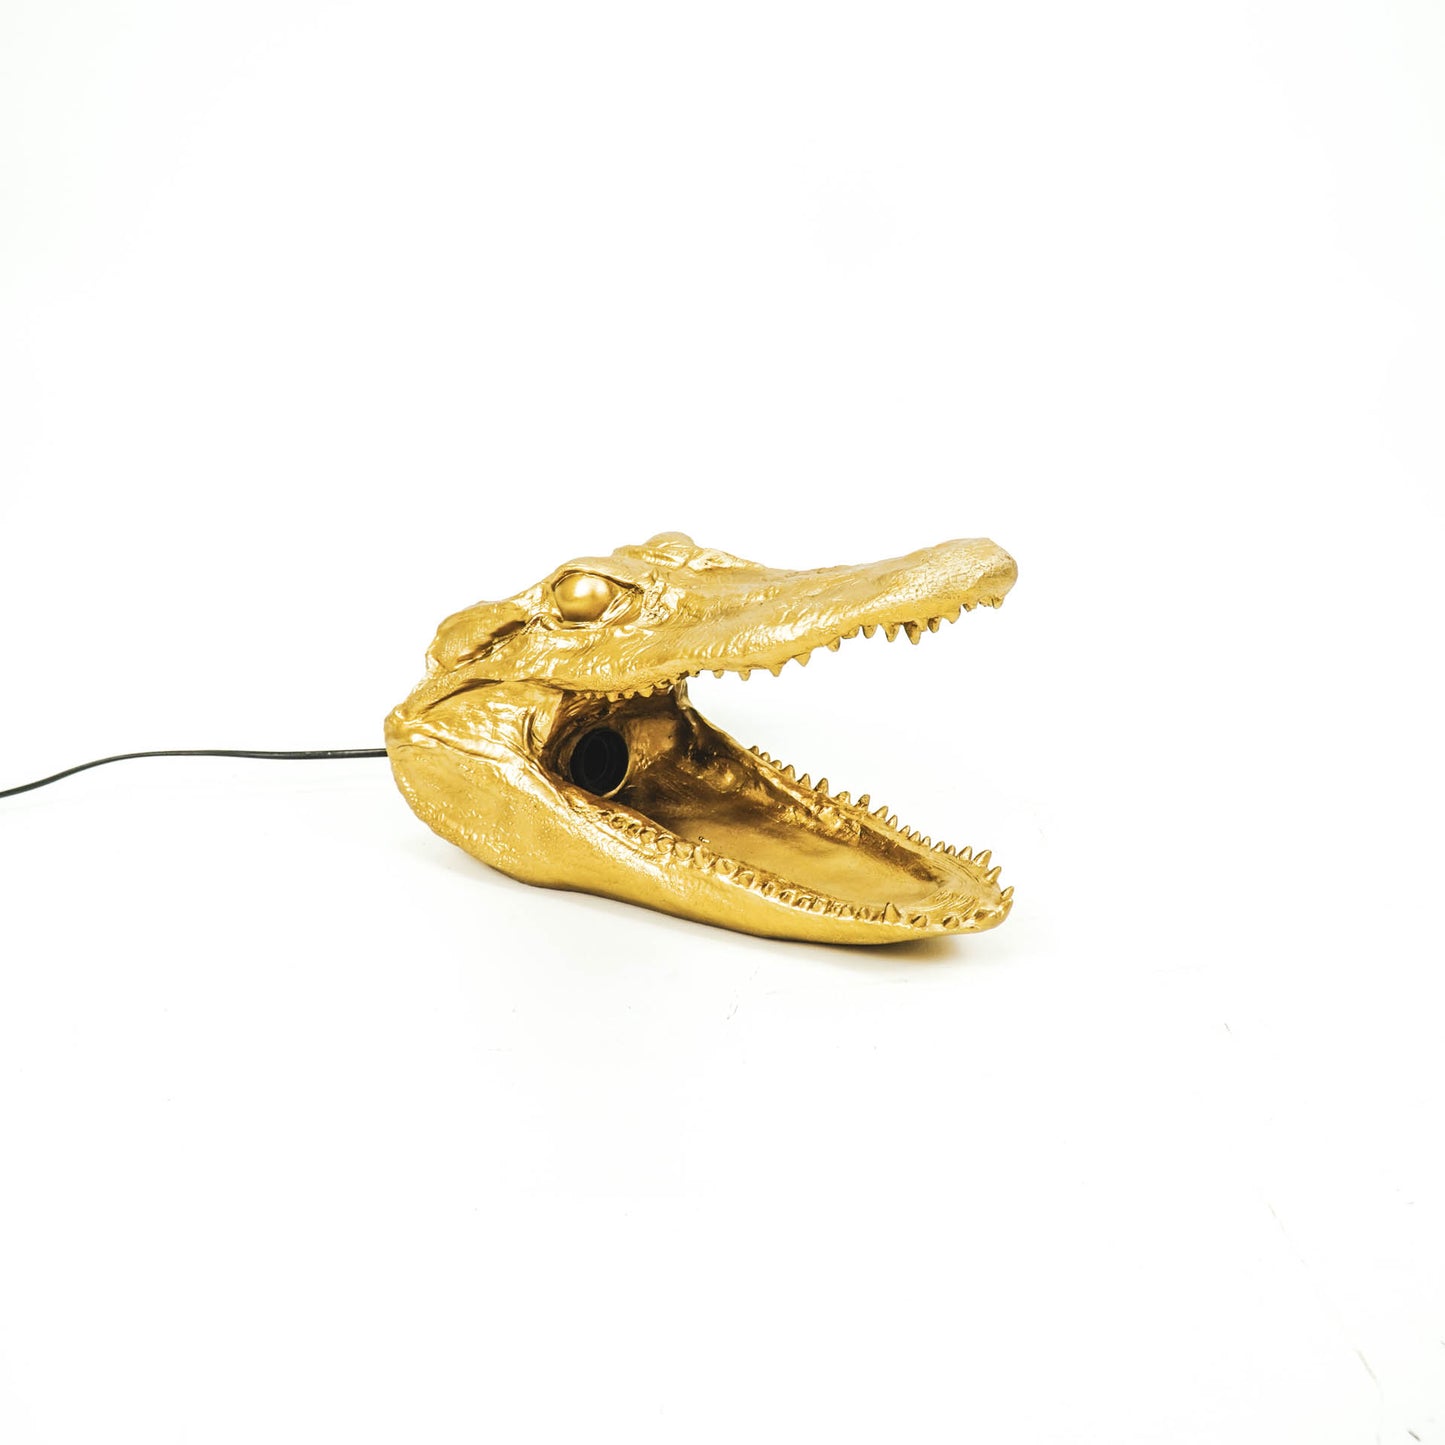 HV Golden Alligator Table Lamp - 39x18x21cm